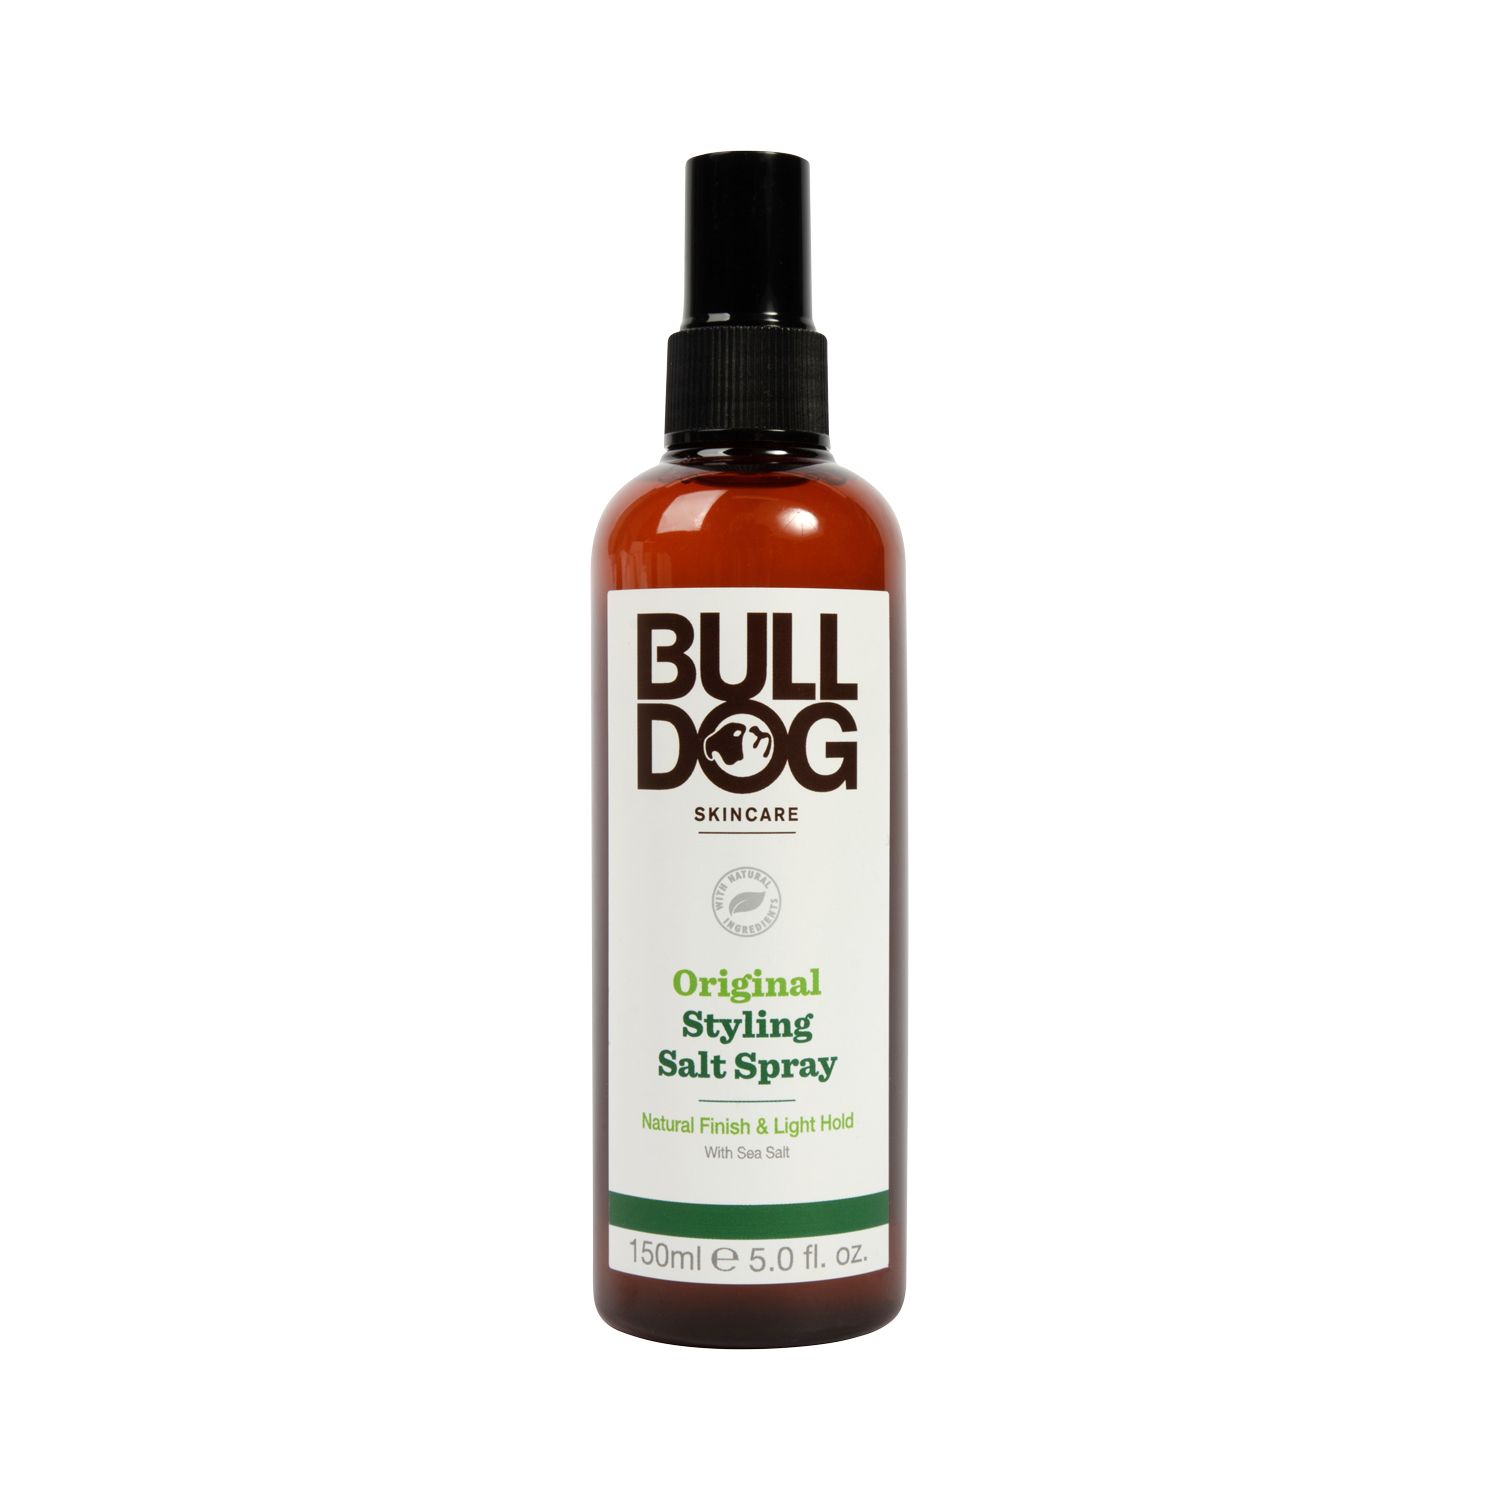 Bulldog - Original Styling Salt Spray - leichter Halt und natürliches Finish